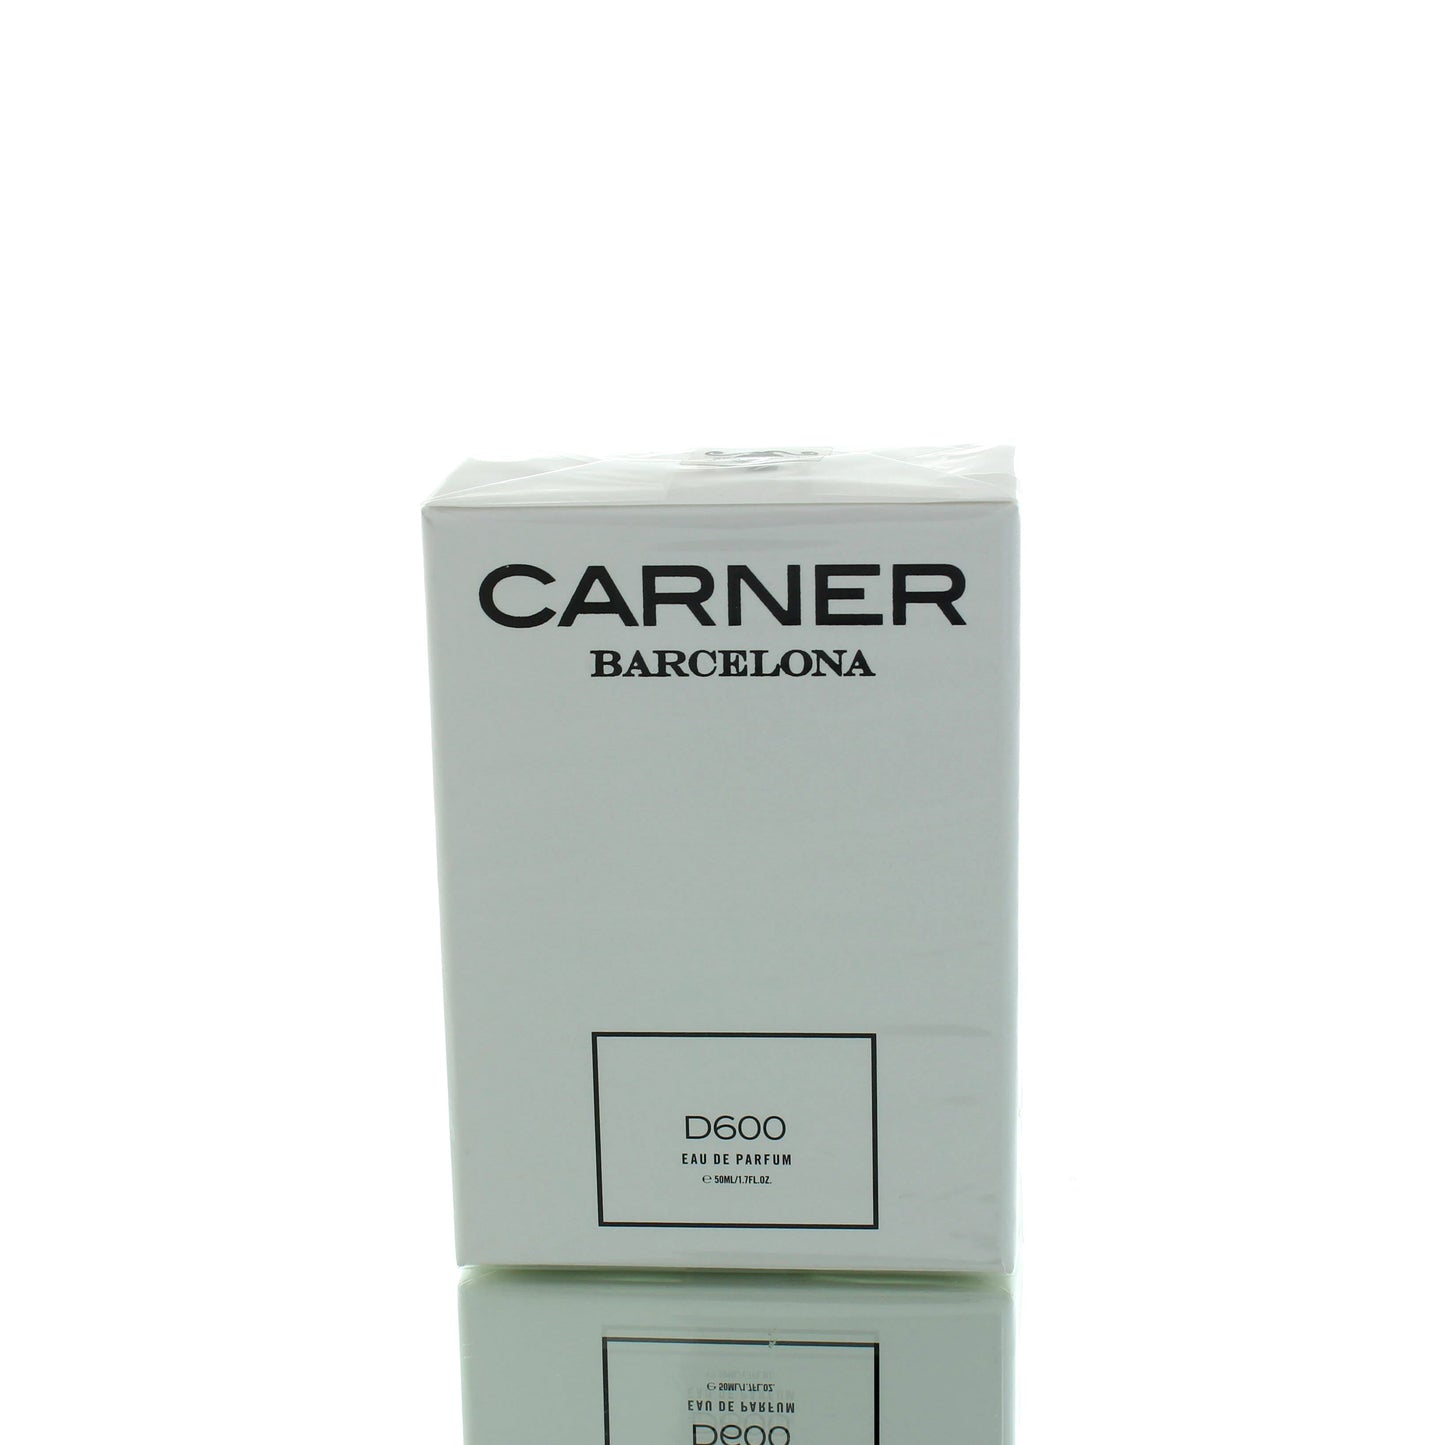 Carner Barcelona D600 EDP M 50ml Boxed **RARE**